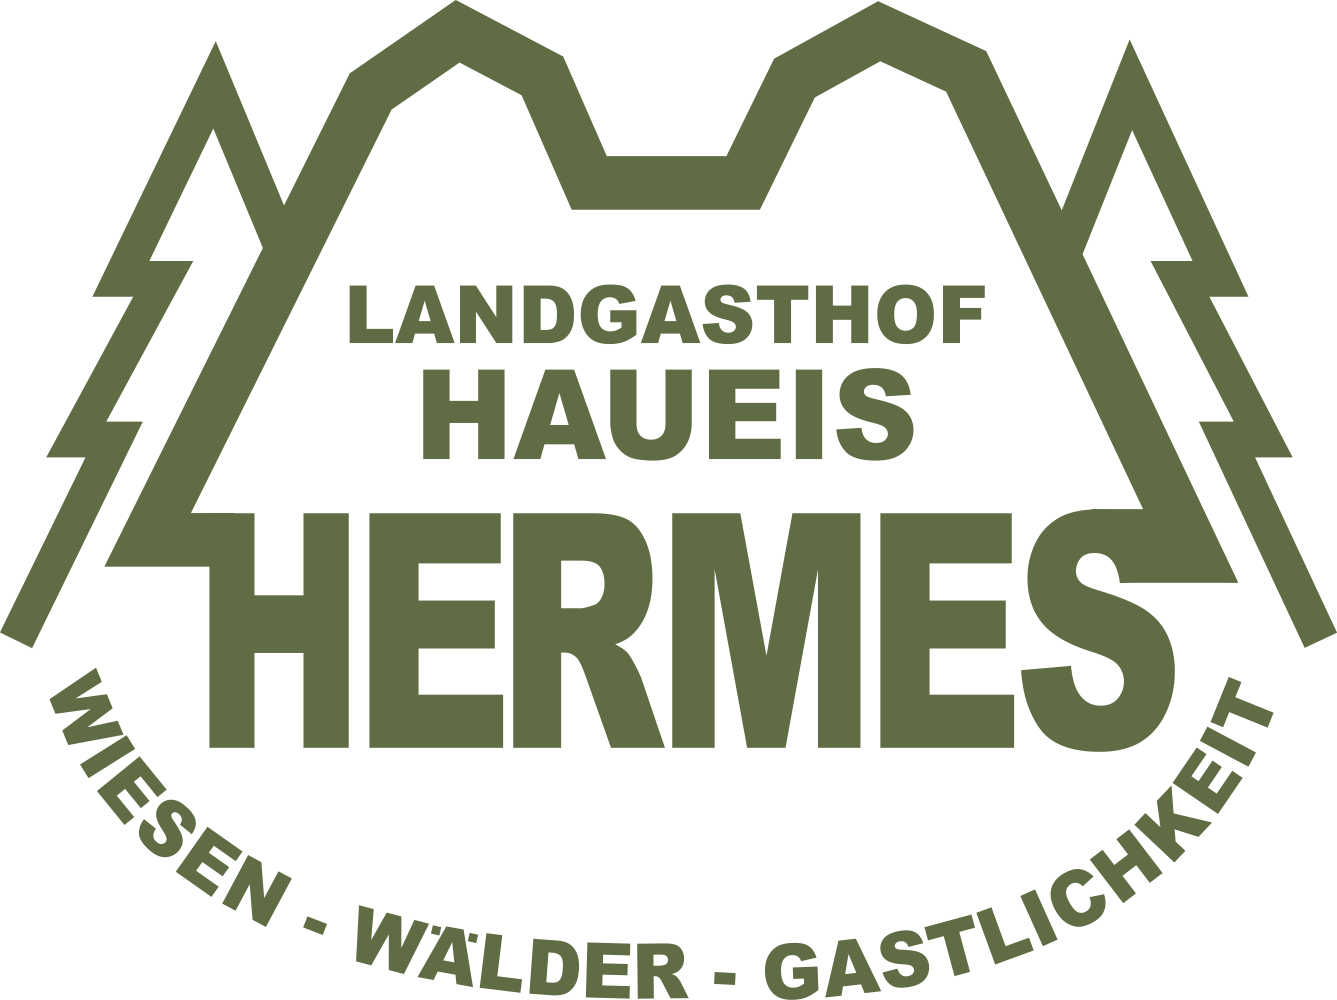 Haueis Hans-Georg Landgasthof + Hotel Haueis